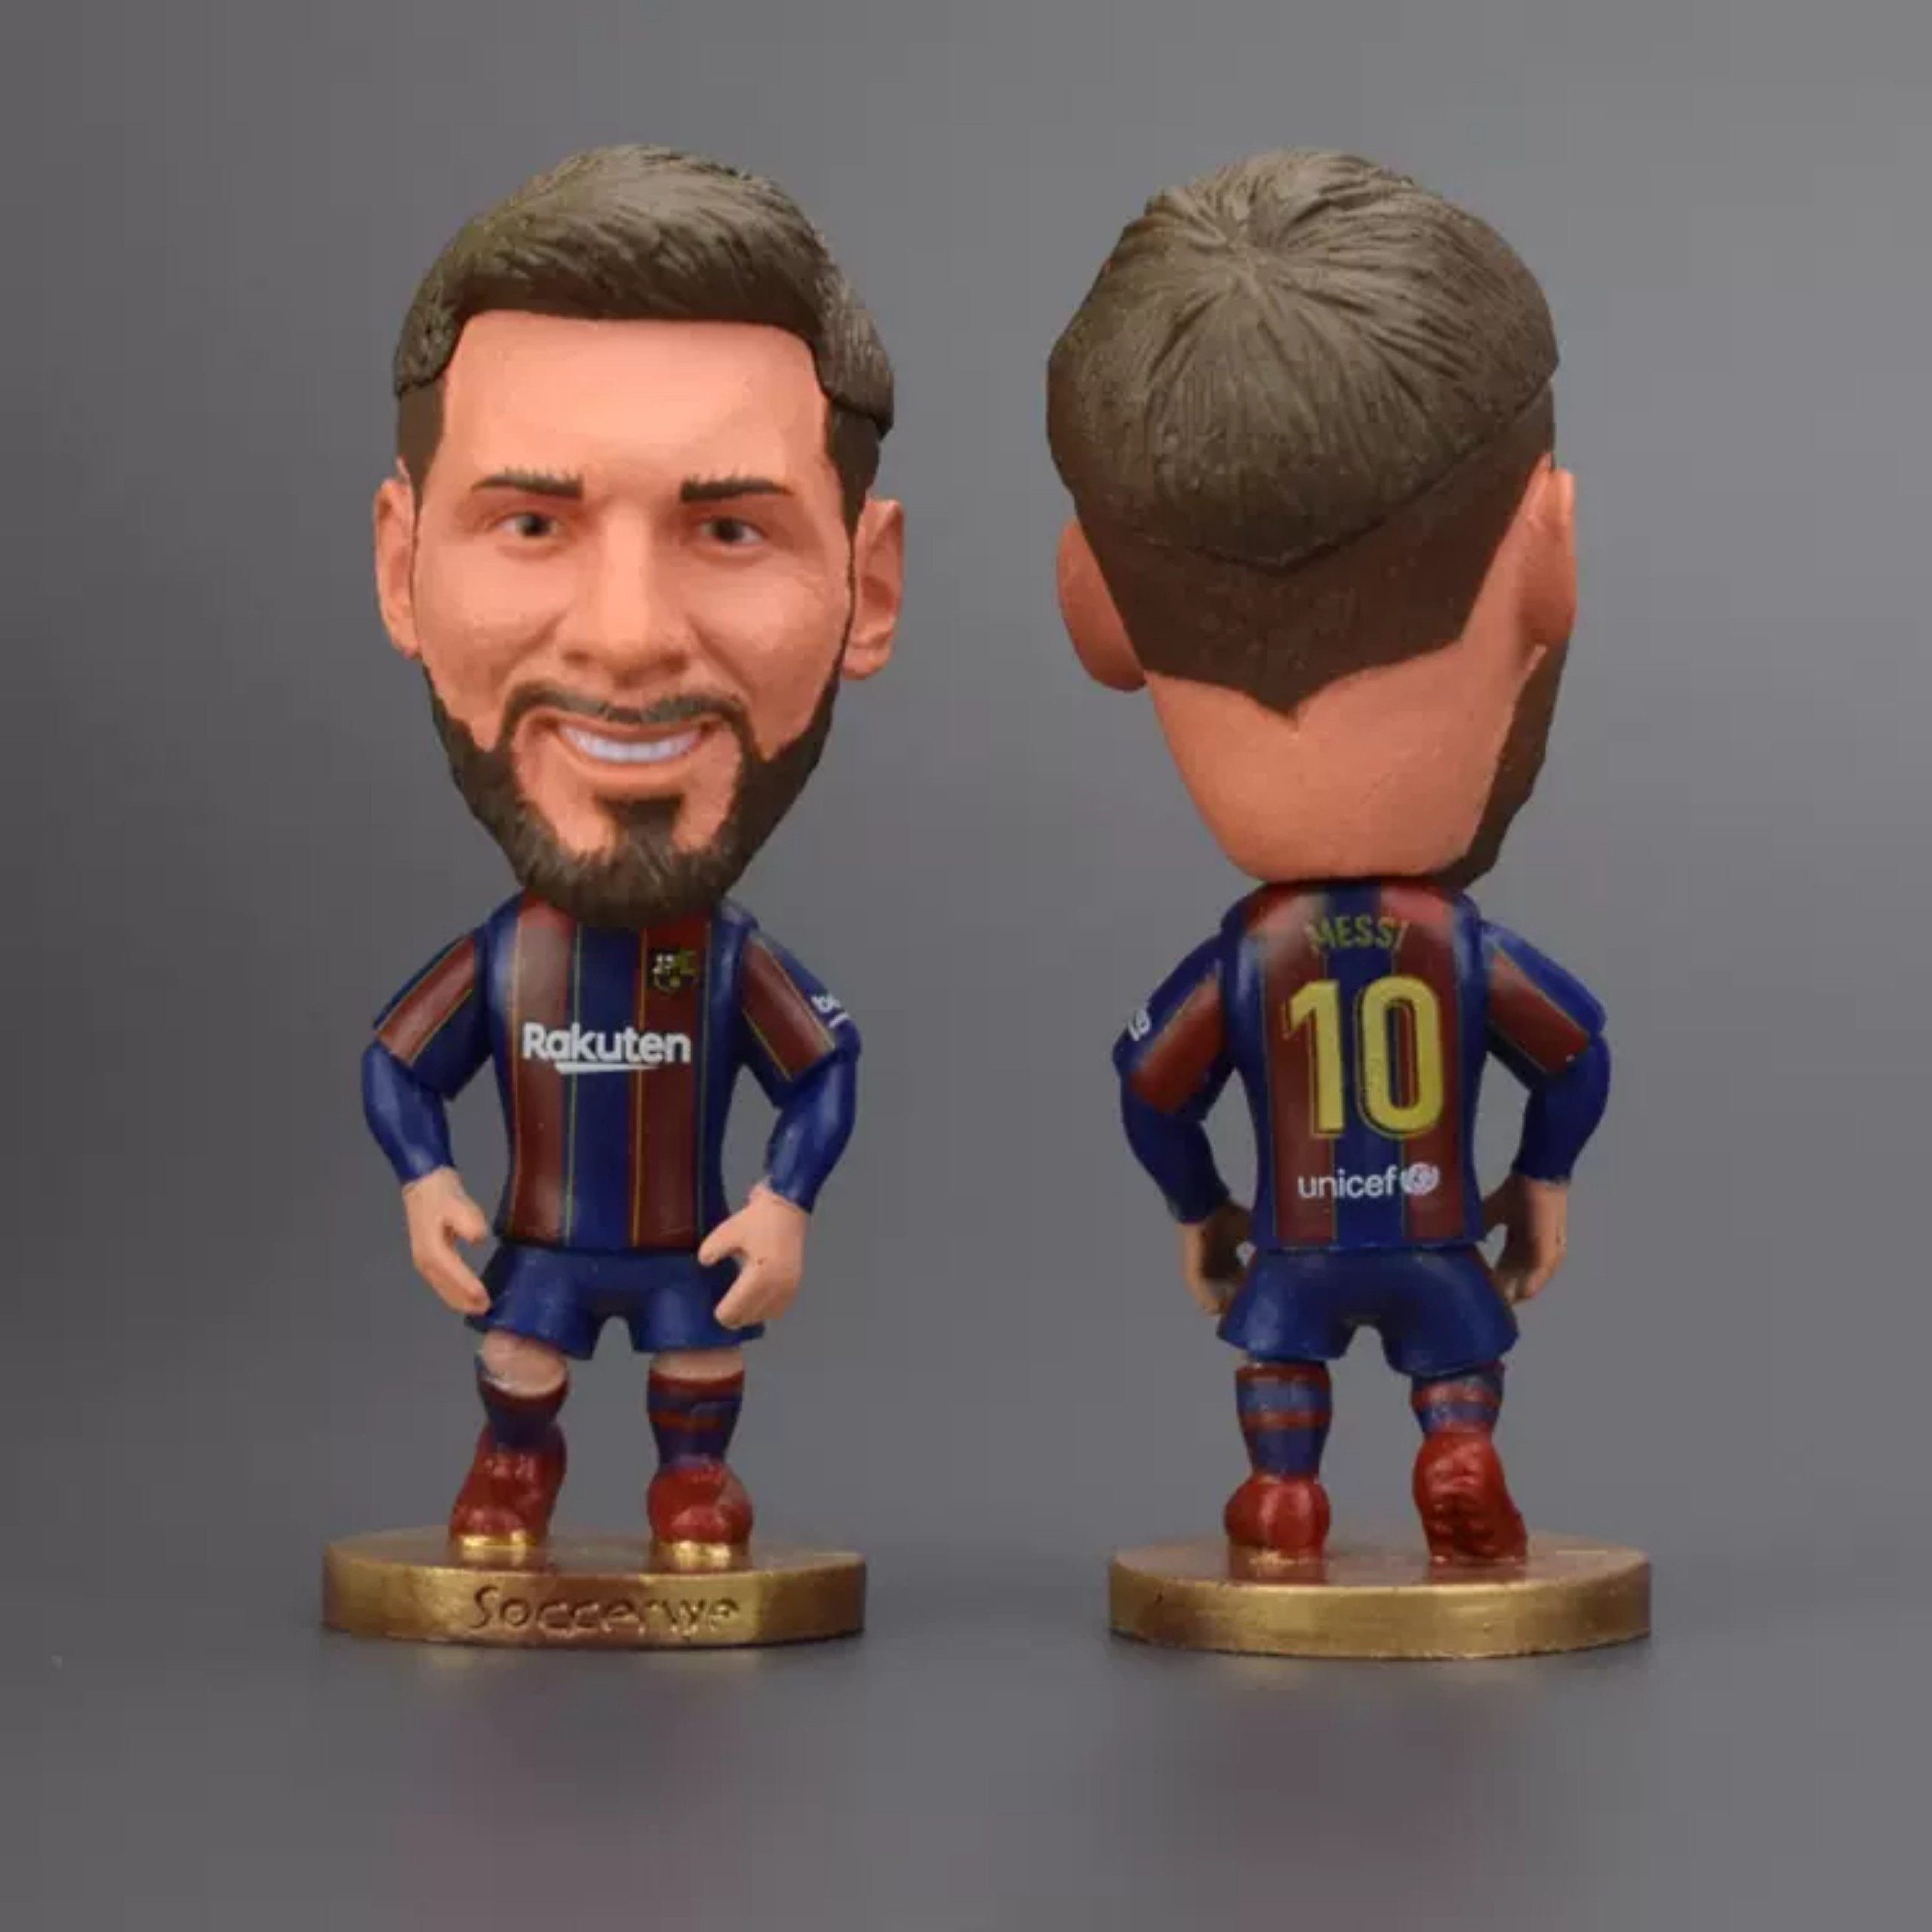 Tượng cầu thủ bóng đá Lionel Messi Clb Barcelona